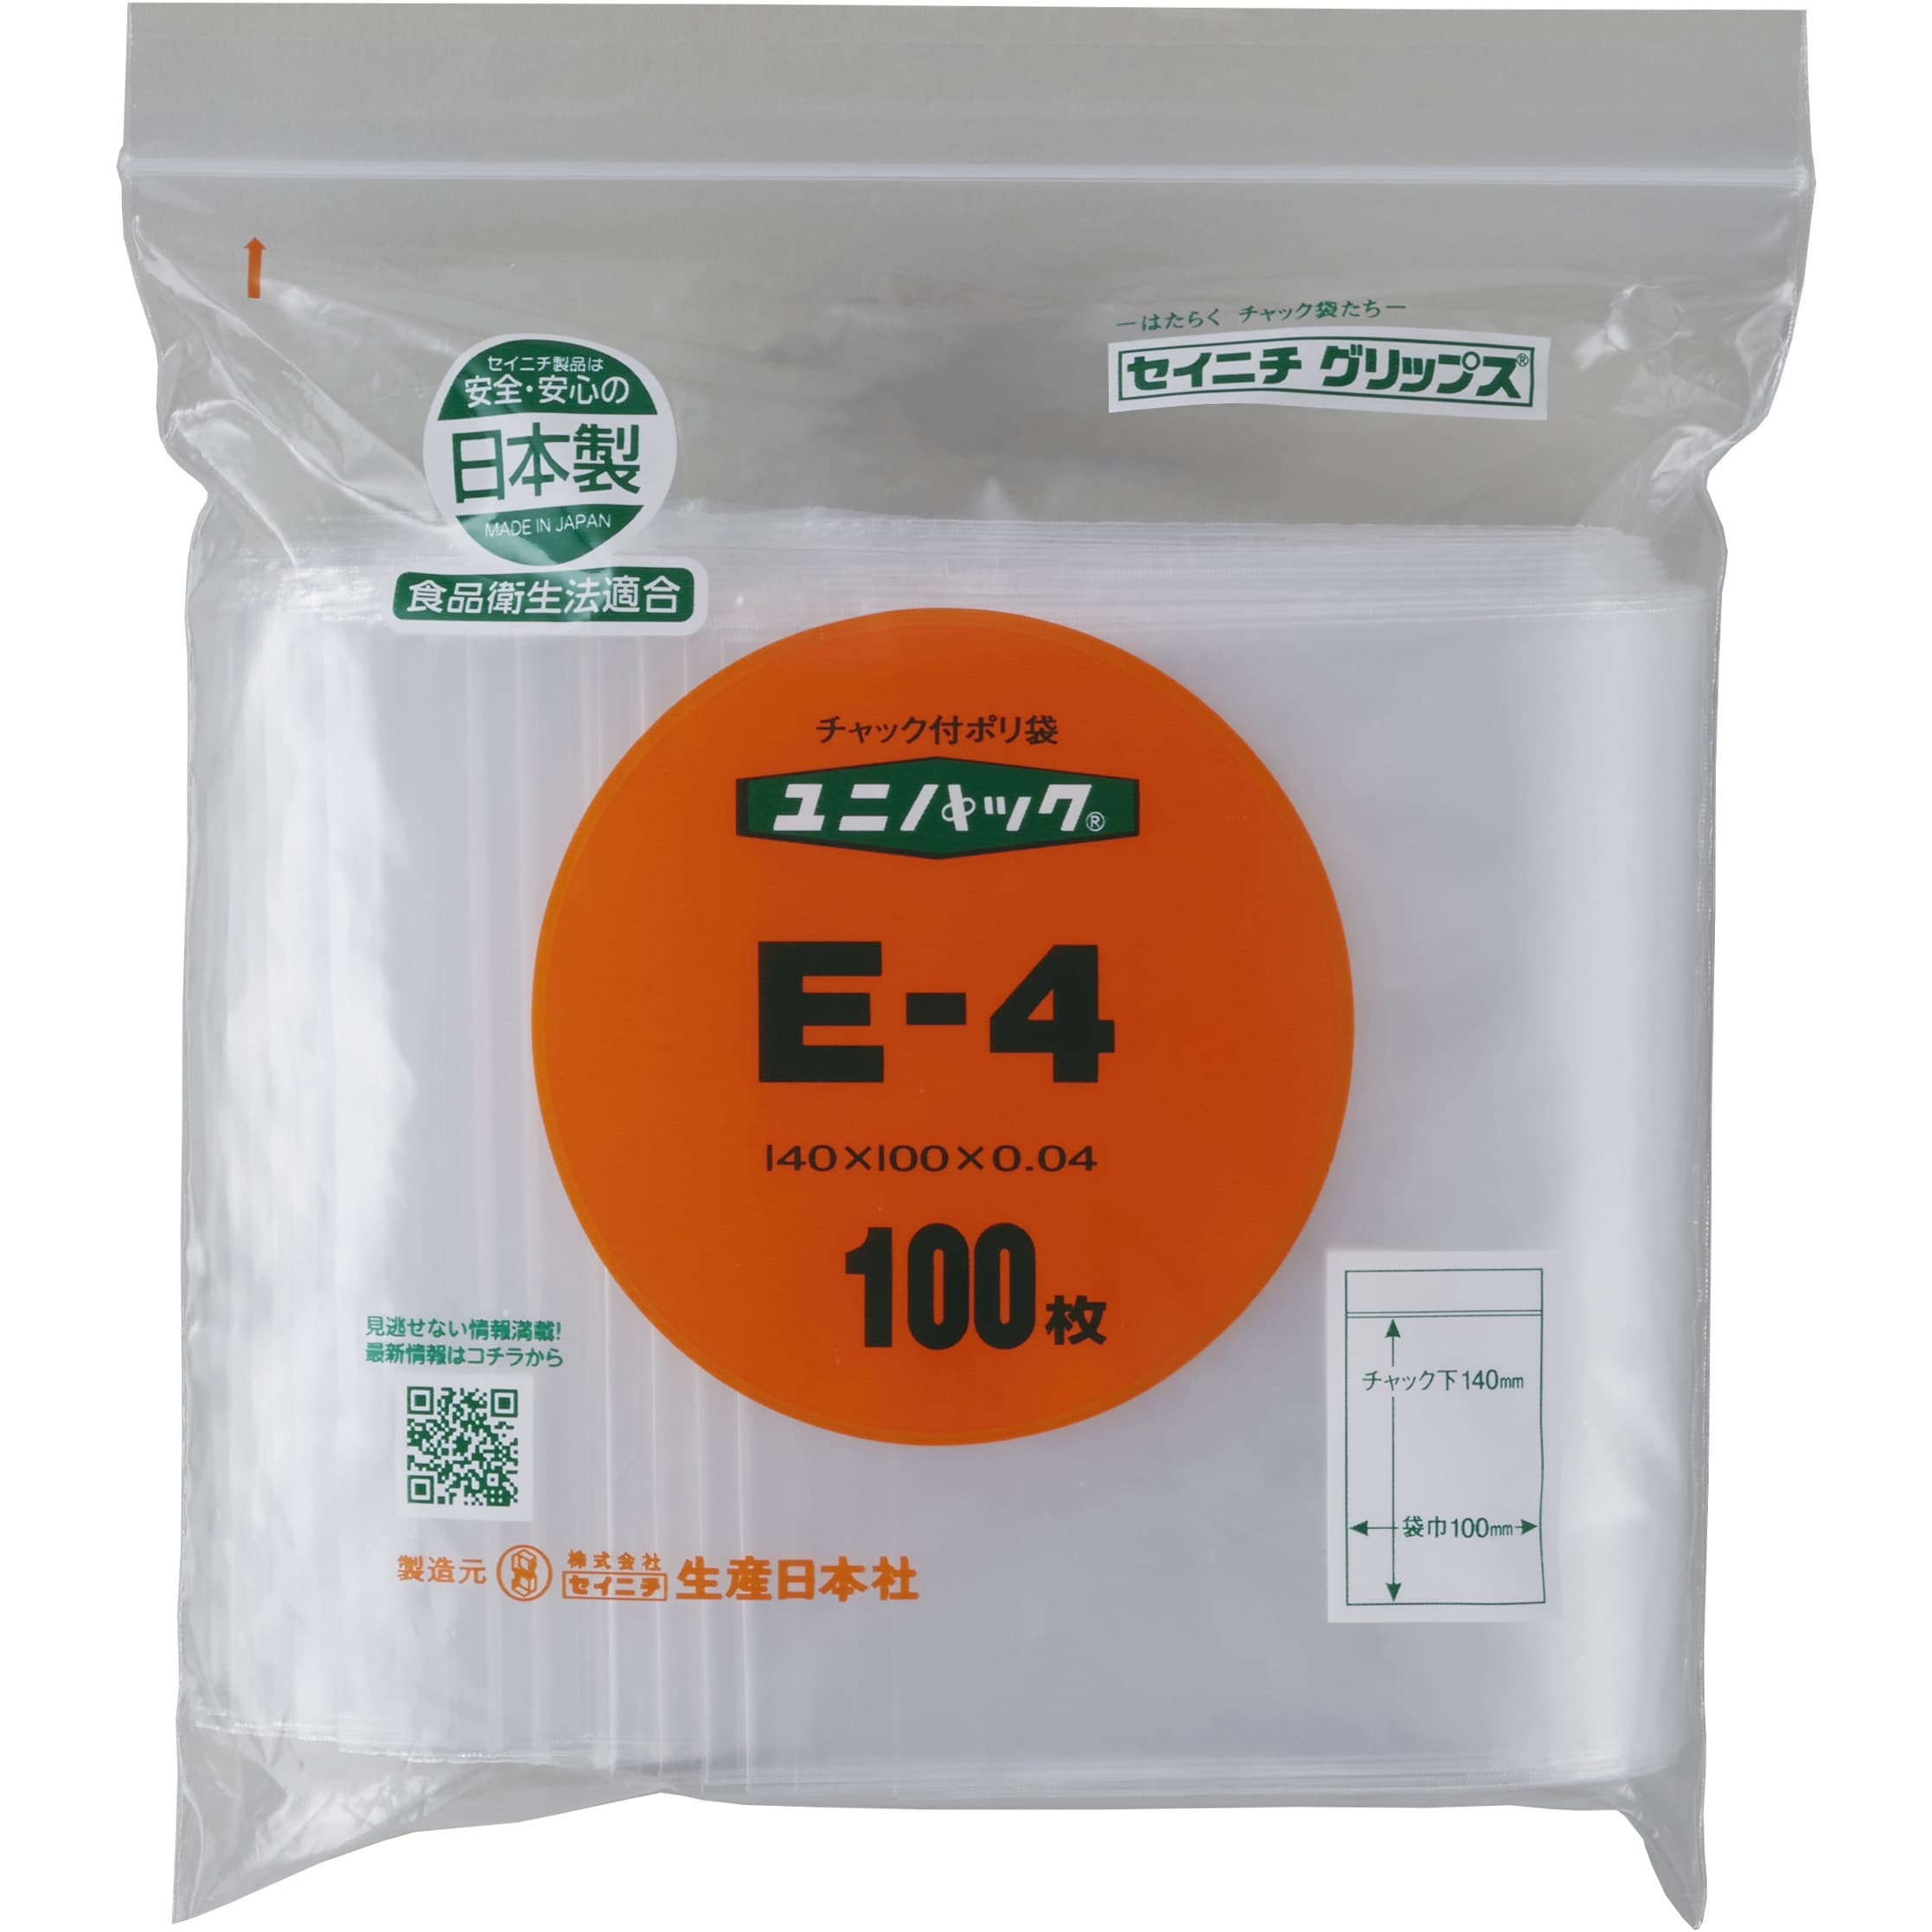 E-4 ユニパック(チャック付ポリ袋) 0.04mm 1パック(100枚) セイニチ(生産日本社) 【通販サイトMonotaRO】